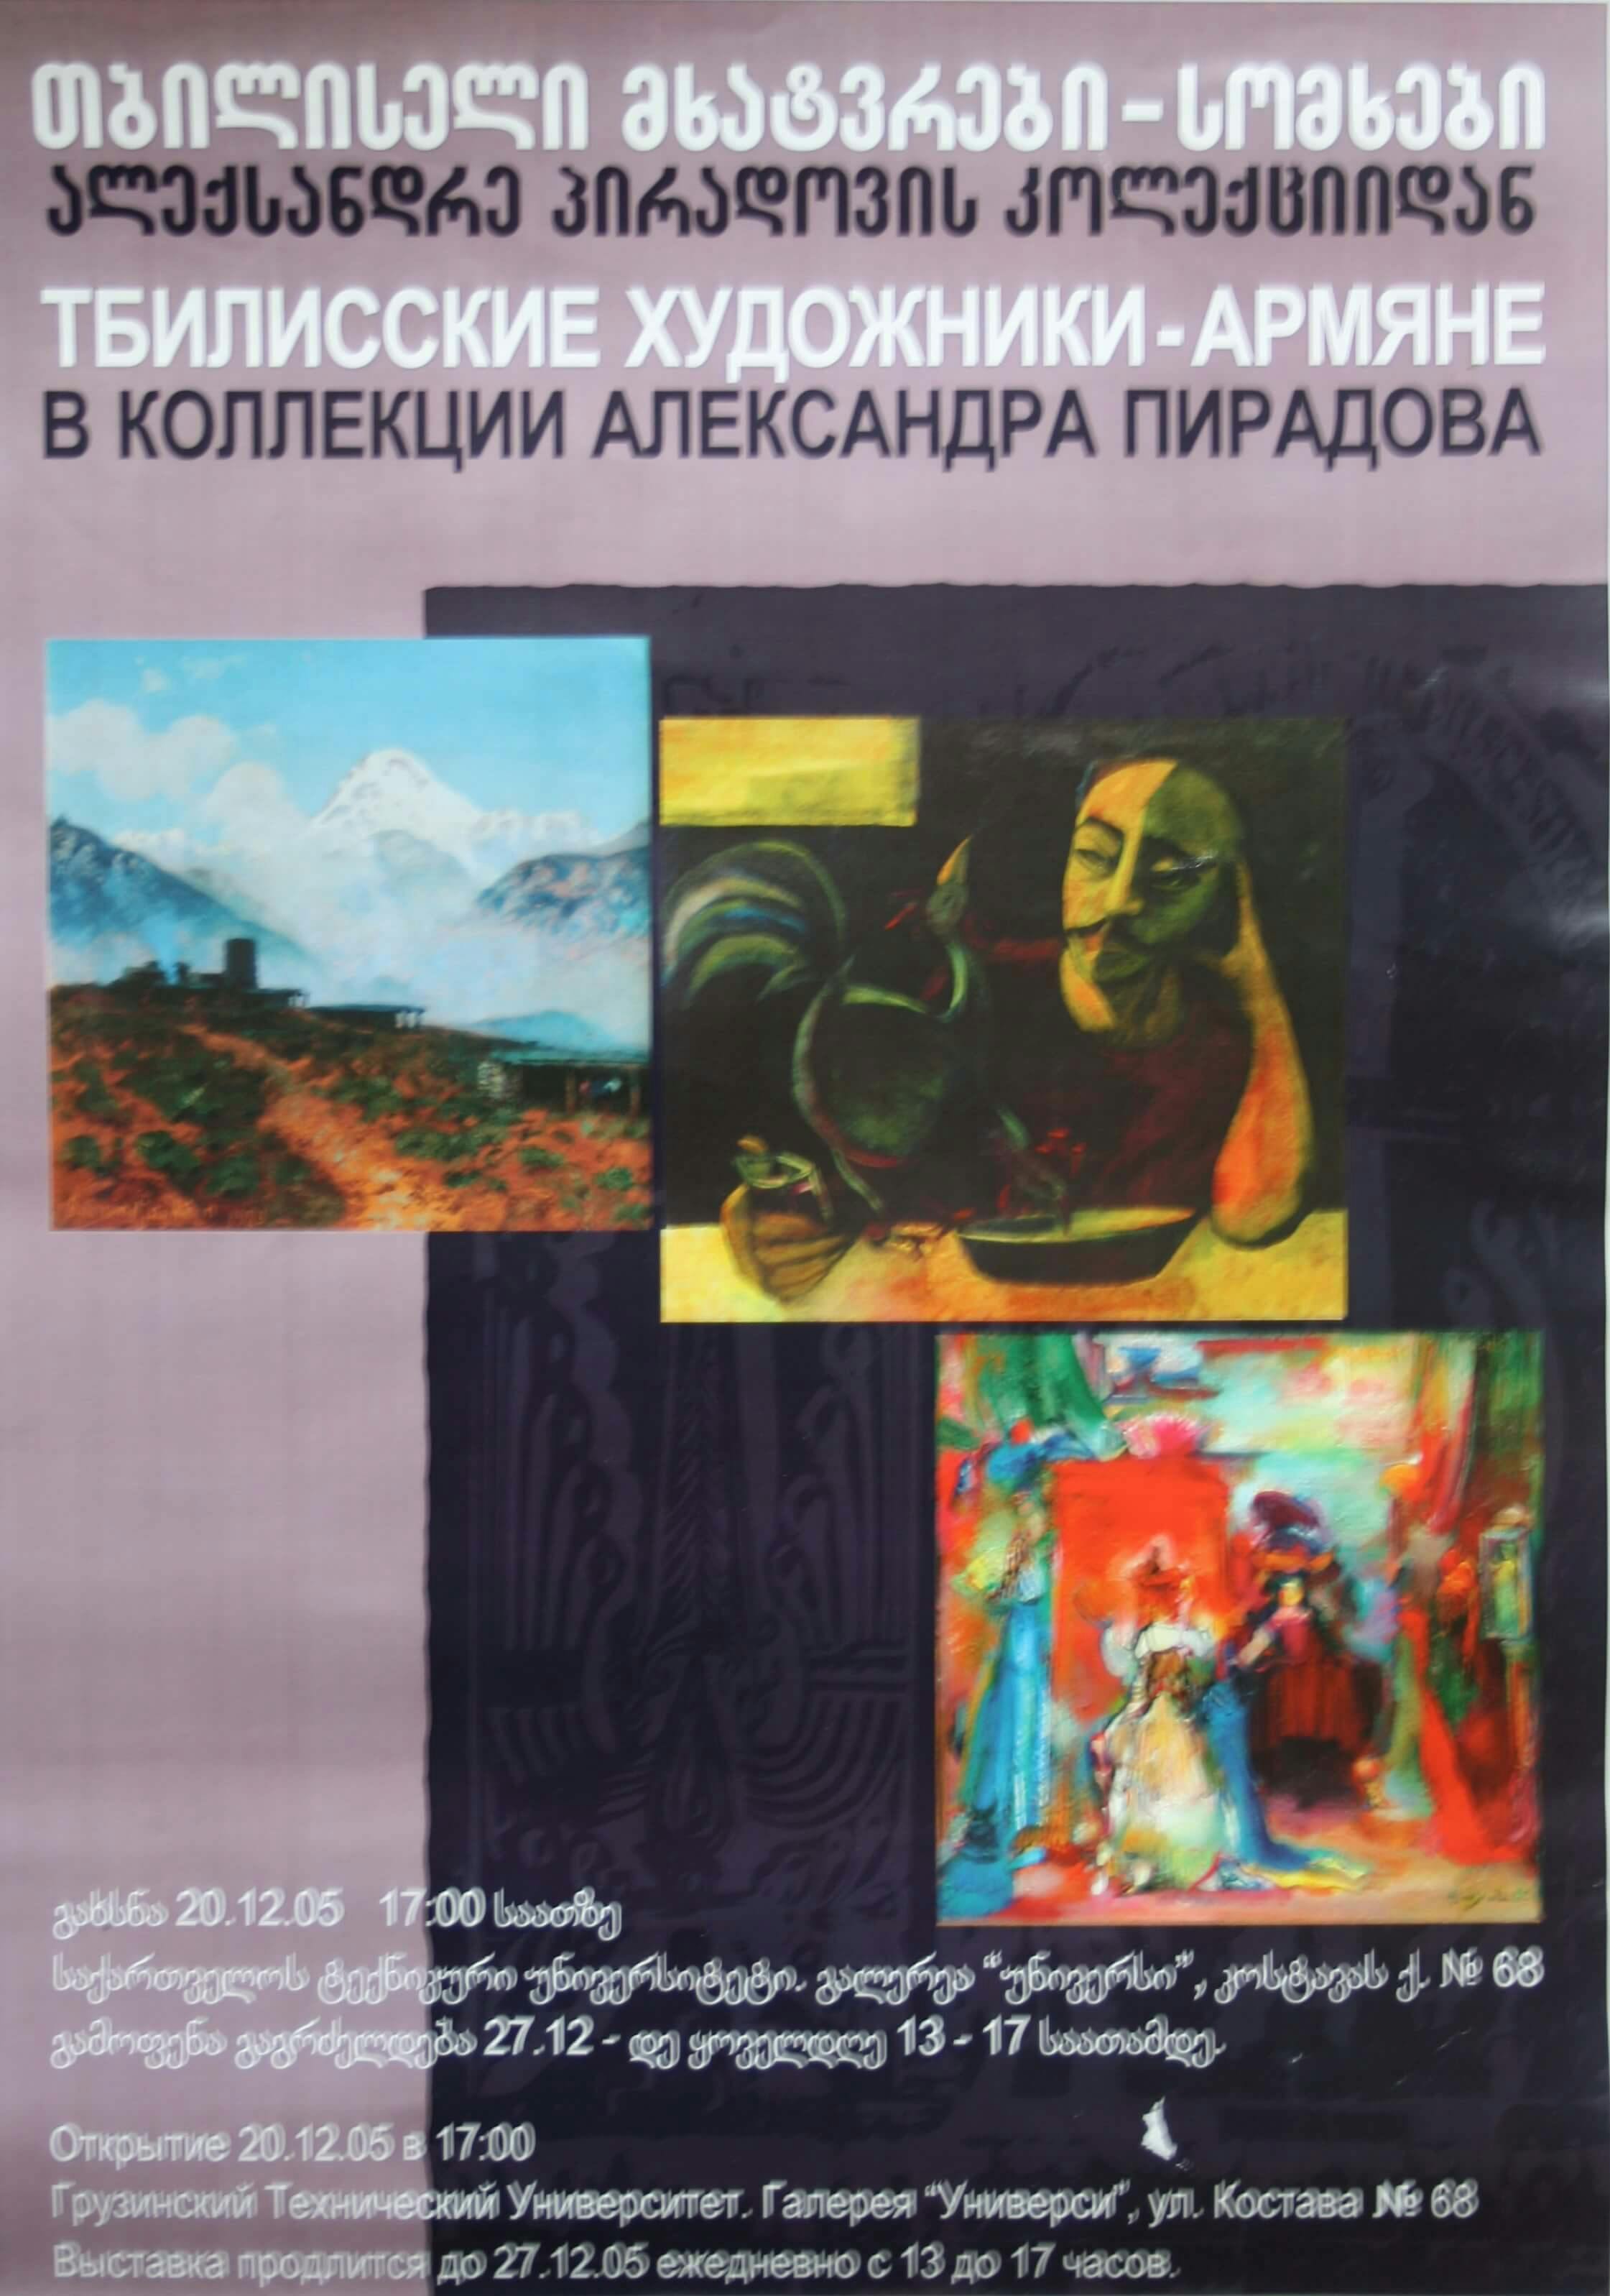 ალექსანდრე პირადოვის კოლექციიდან (თბილისელი მხატვრები - სომხები) - 20.12 - 27.12.2005წ.